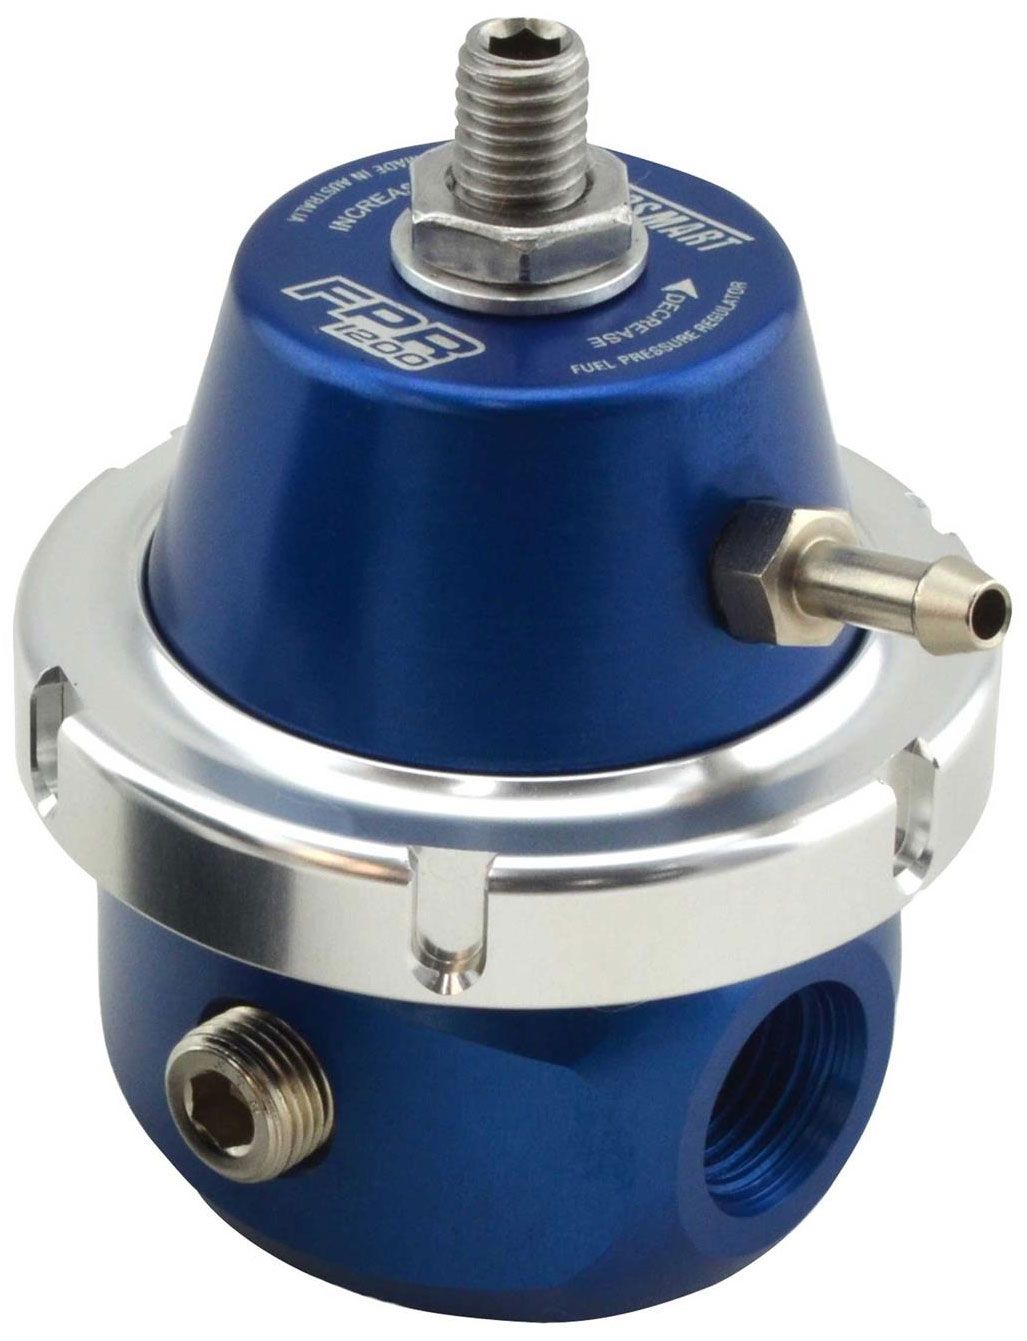 TS-0401-1103 - FPR1200 BLUE FUEL PRESSURE